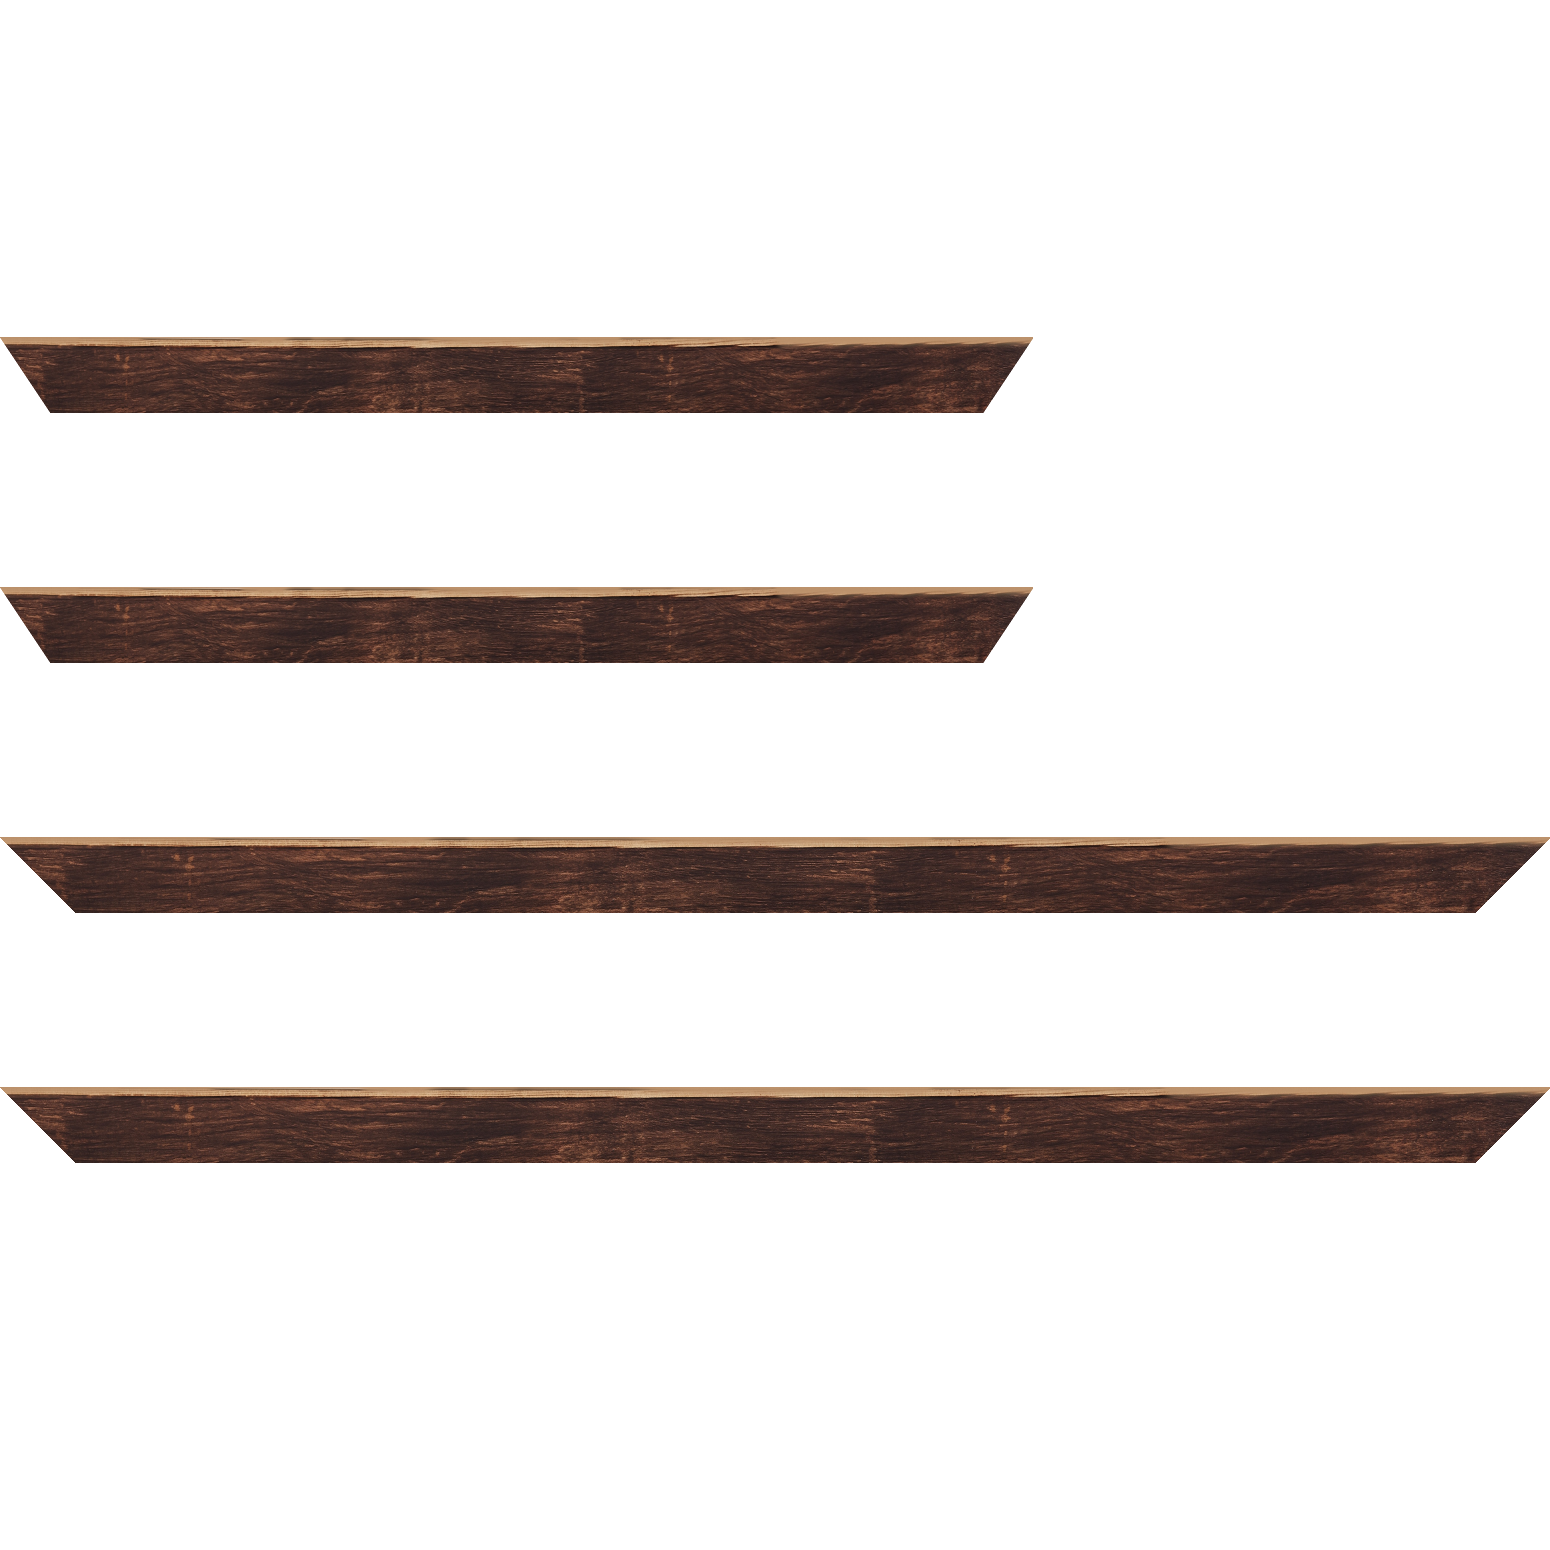 Baguette bois profil arrondi en pente plongeant largeur 2.4cm couleur marron effet ressuyé, angle du cadre extérieur filet naturel - 70x100